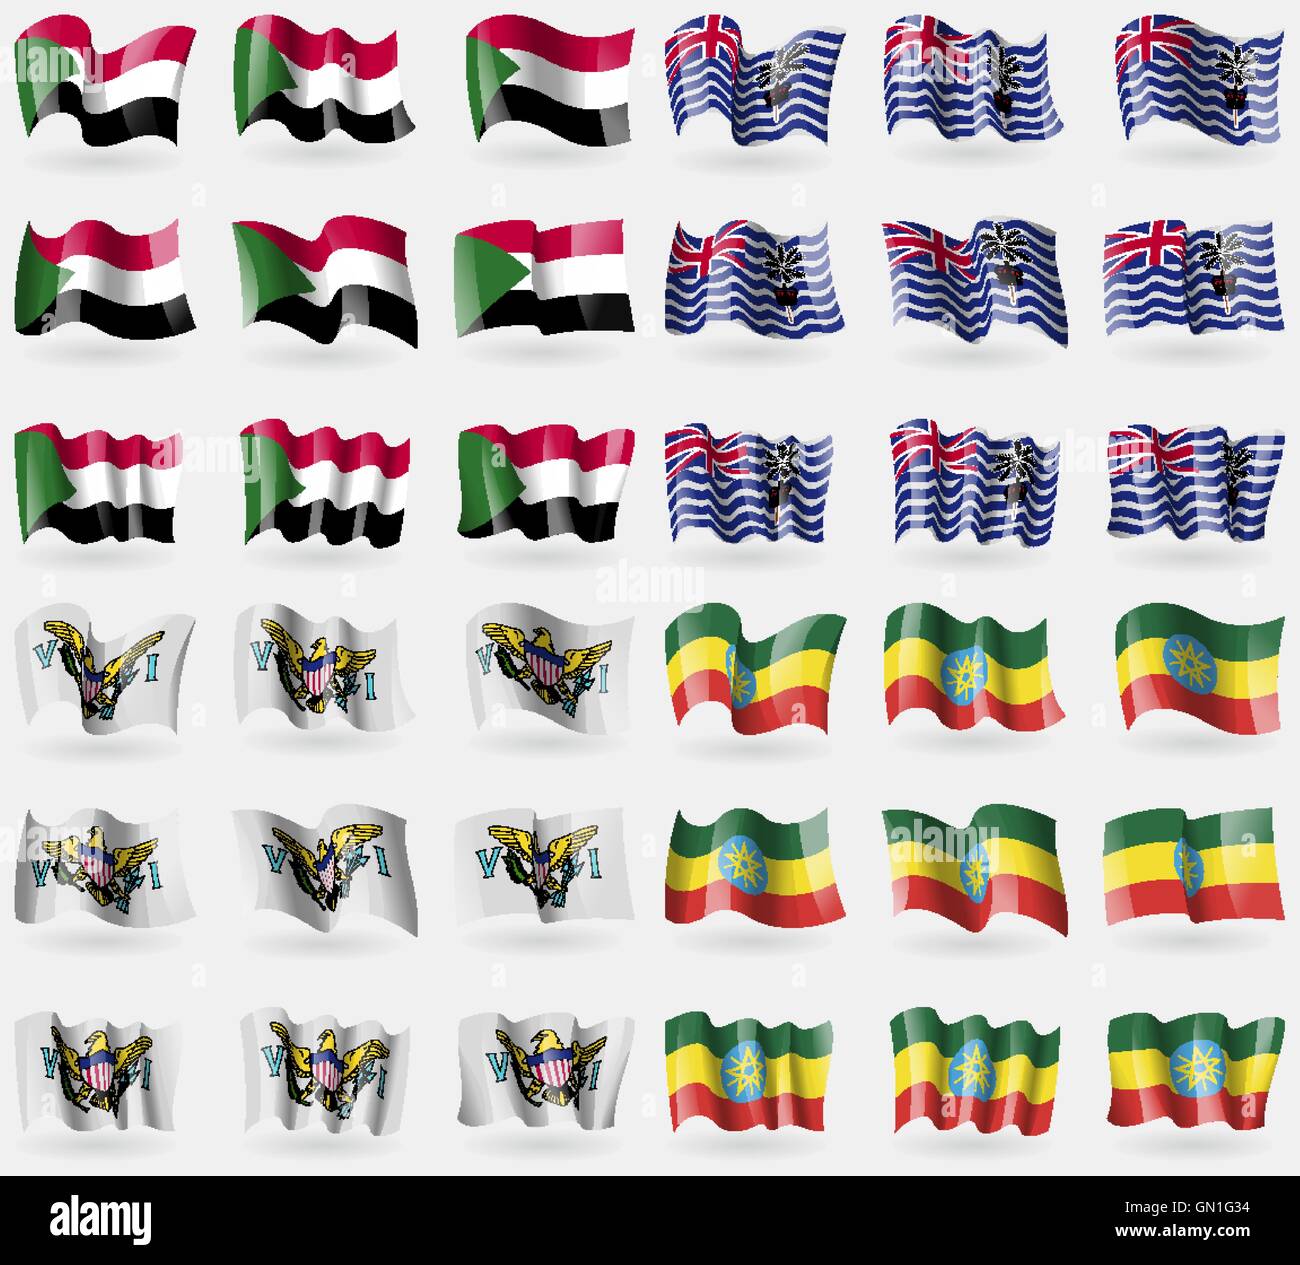 Soudan, Territoire britannique de l'Océan Indien, VirginIslandsUS, Éthiopie. Ensemble de 36 drapeaux des pays du monde. Vector Illustration de Vecteur